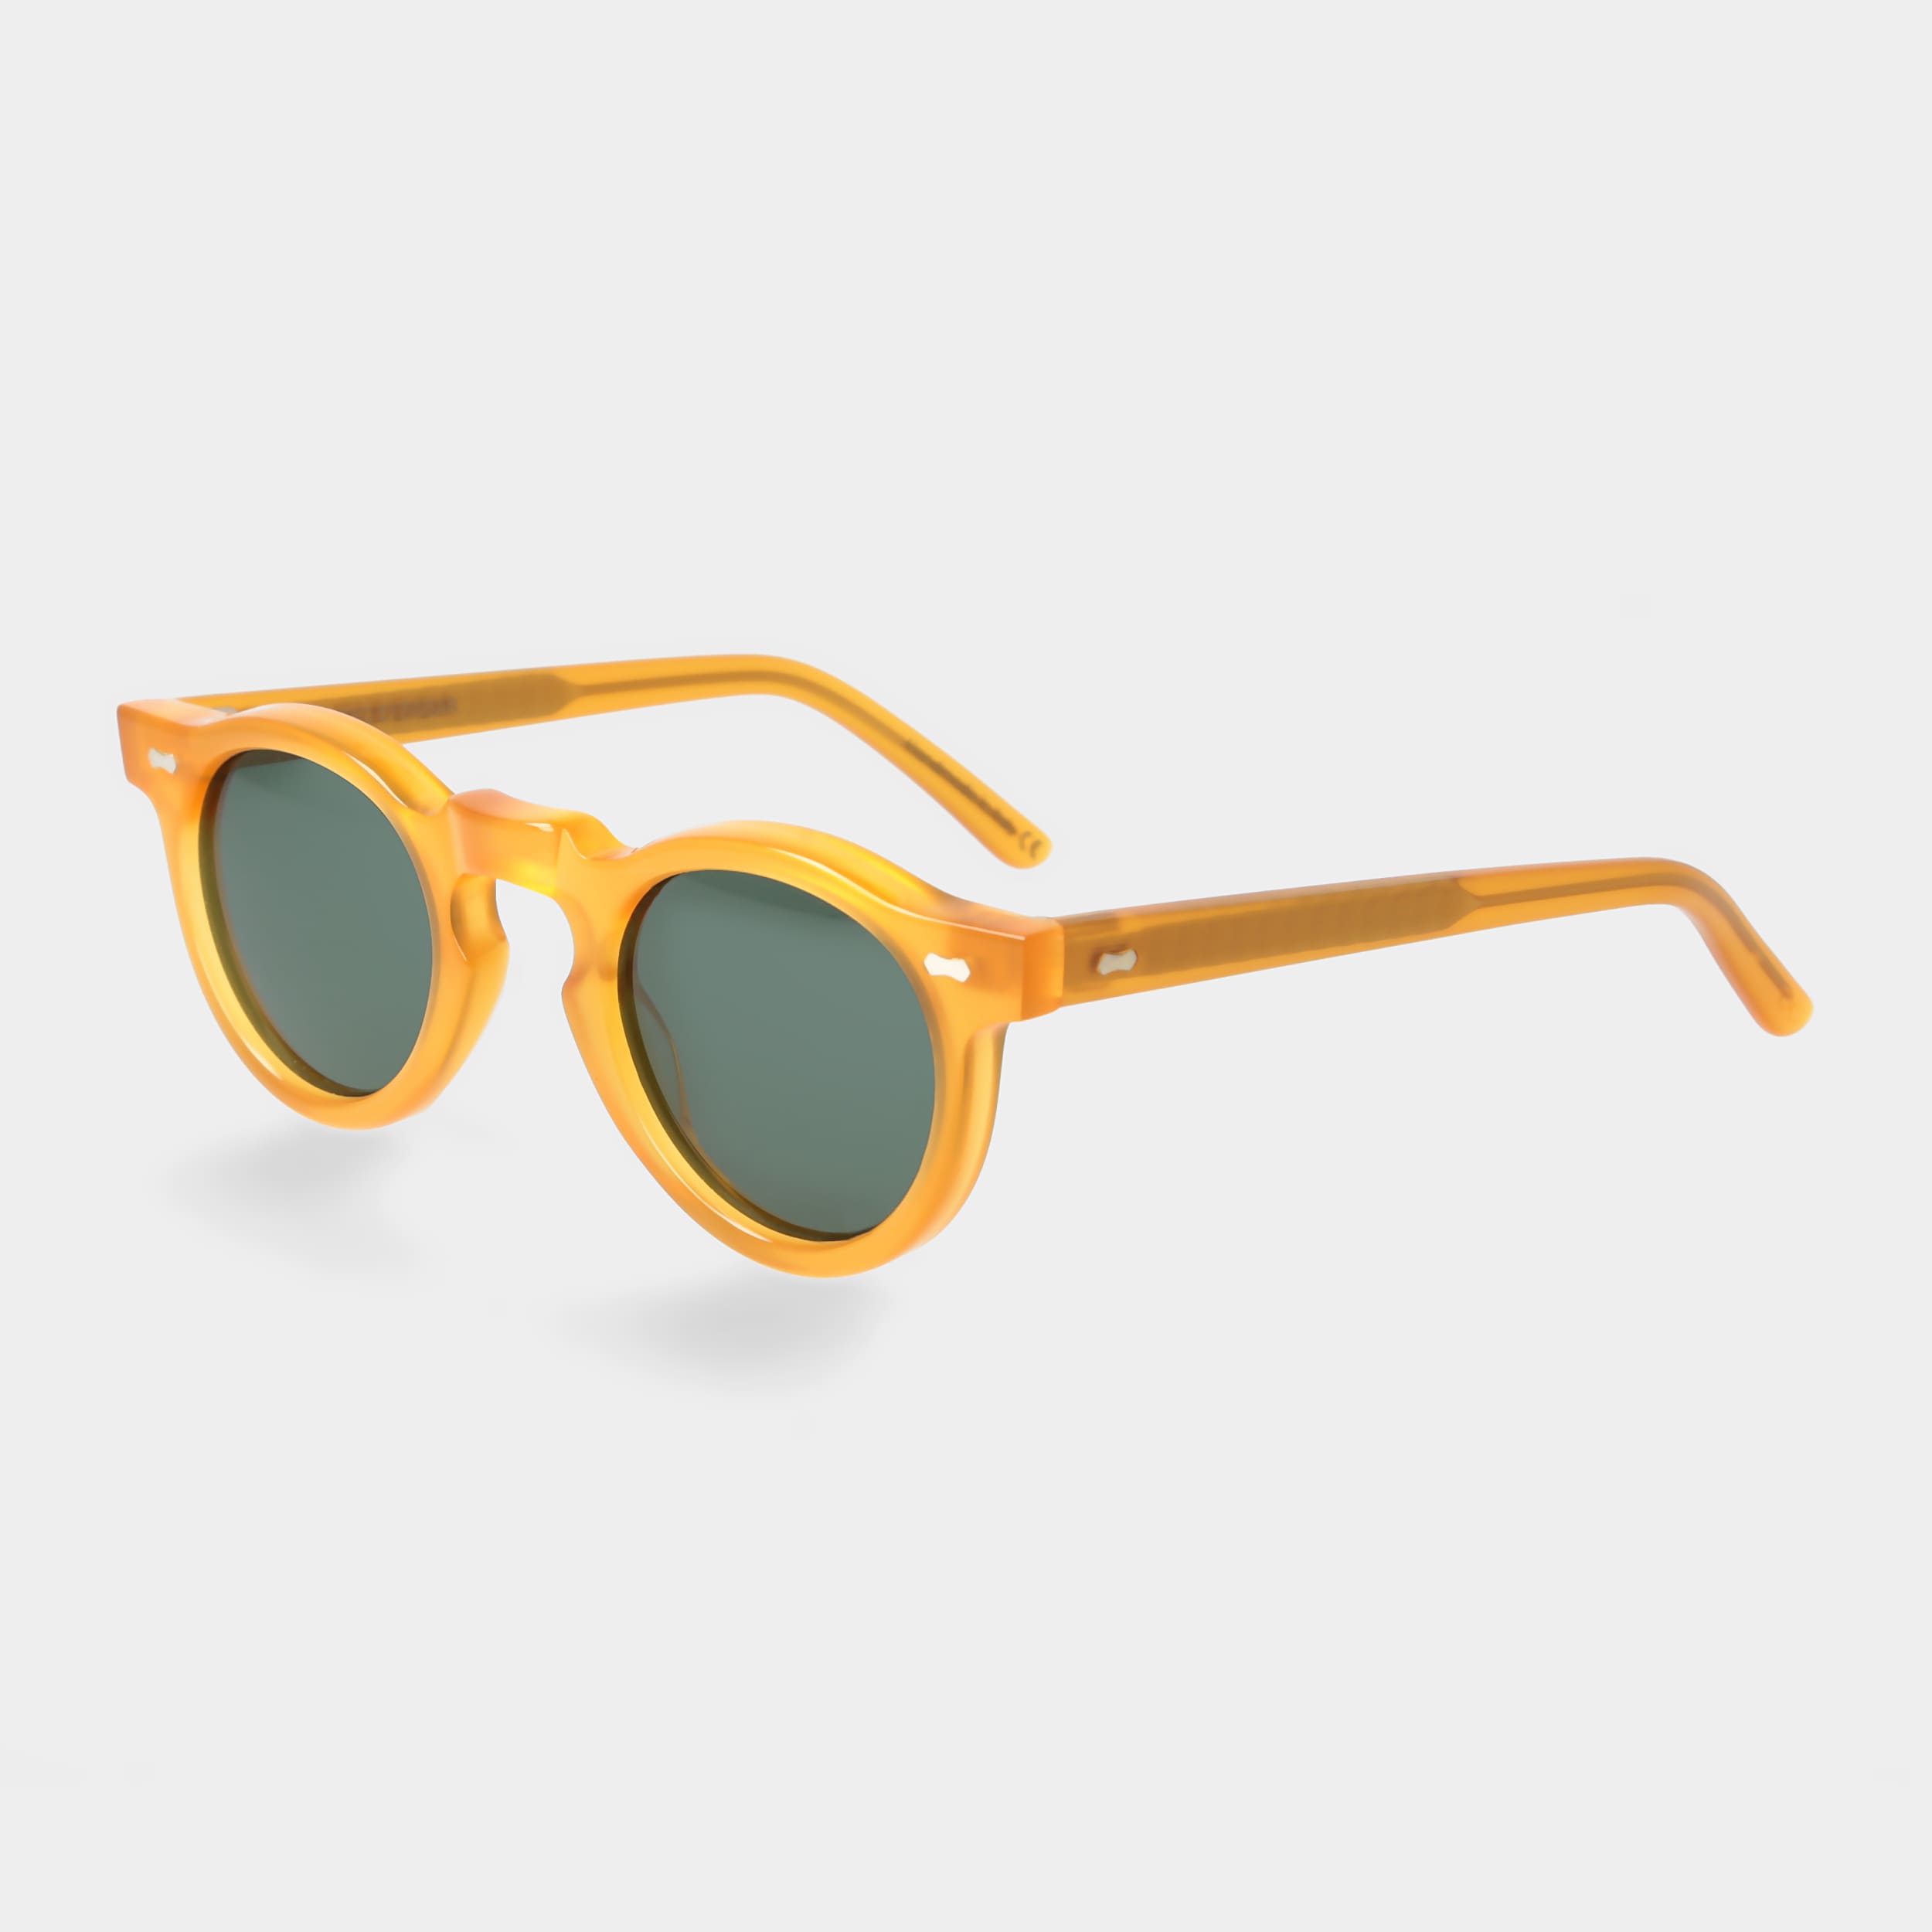 grünen mit Gelbe Sonnenbrille Eyewear | Gläsern: Welt TBD